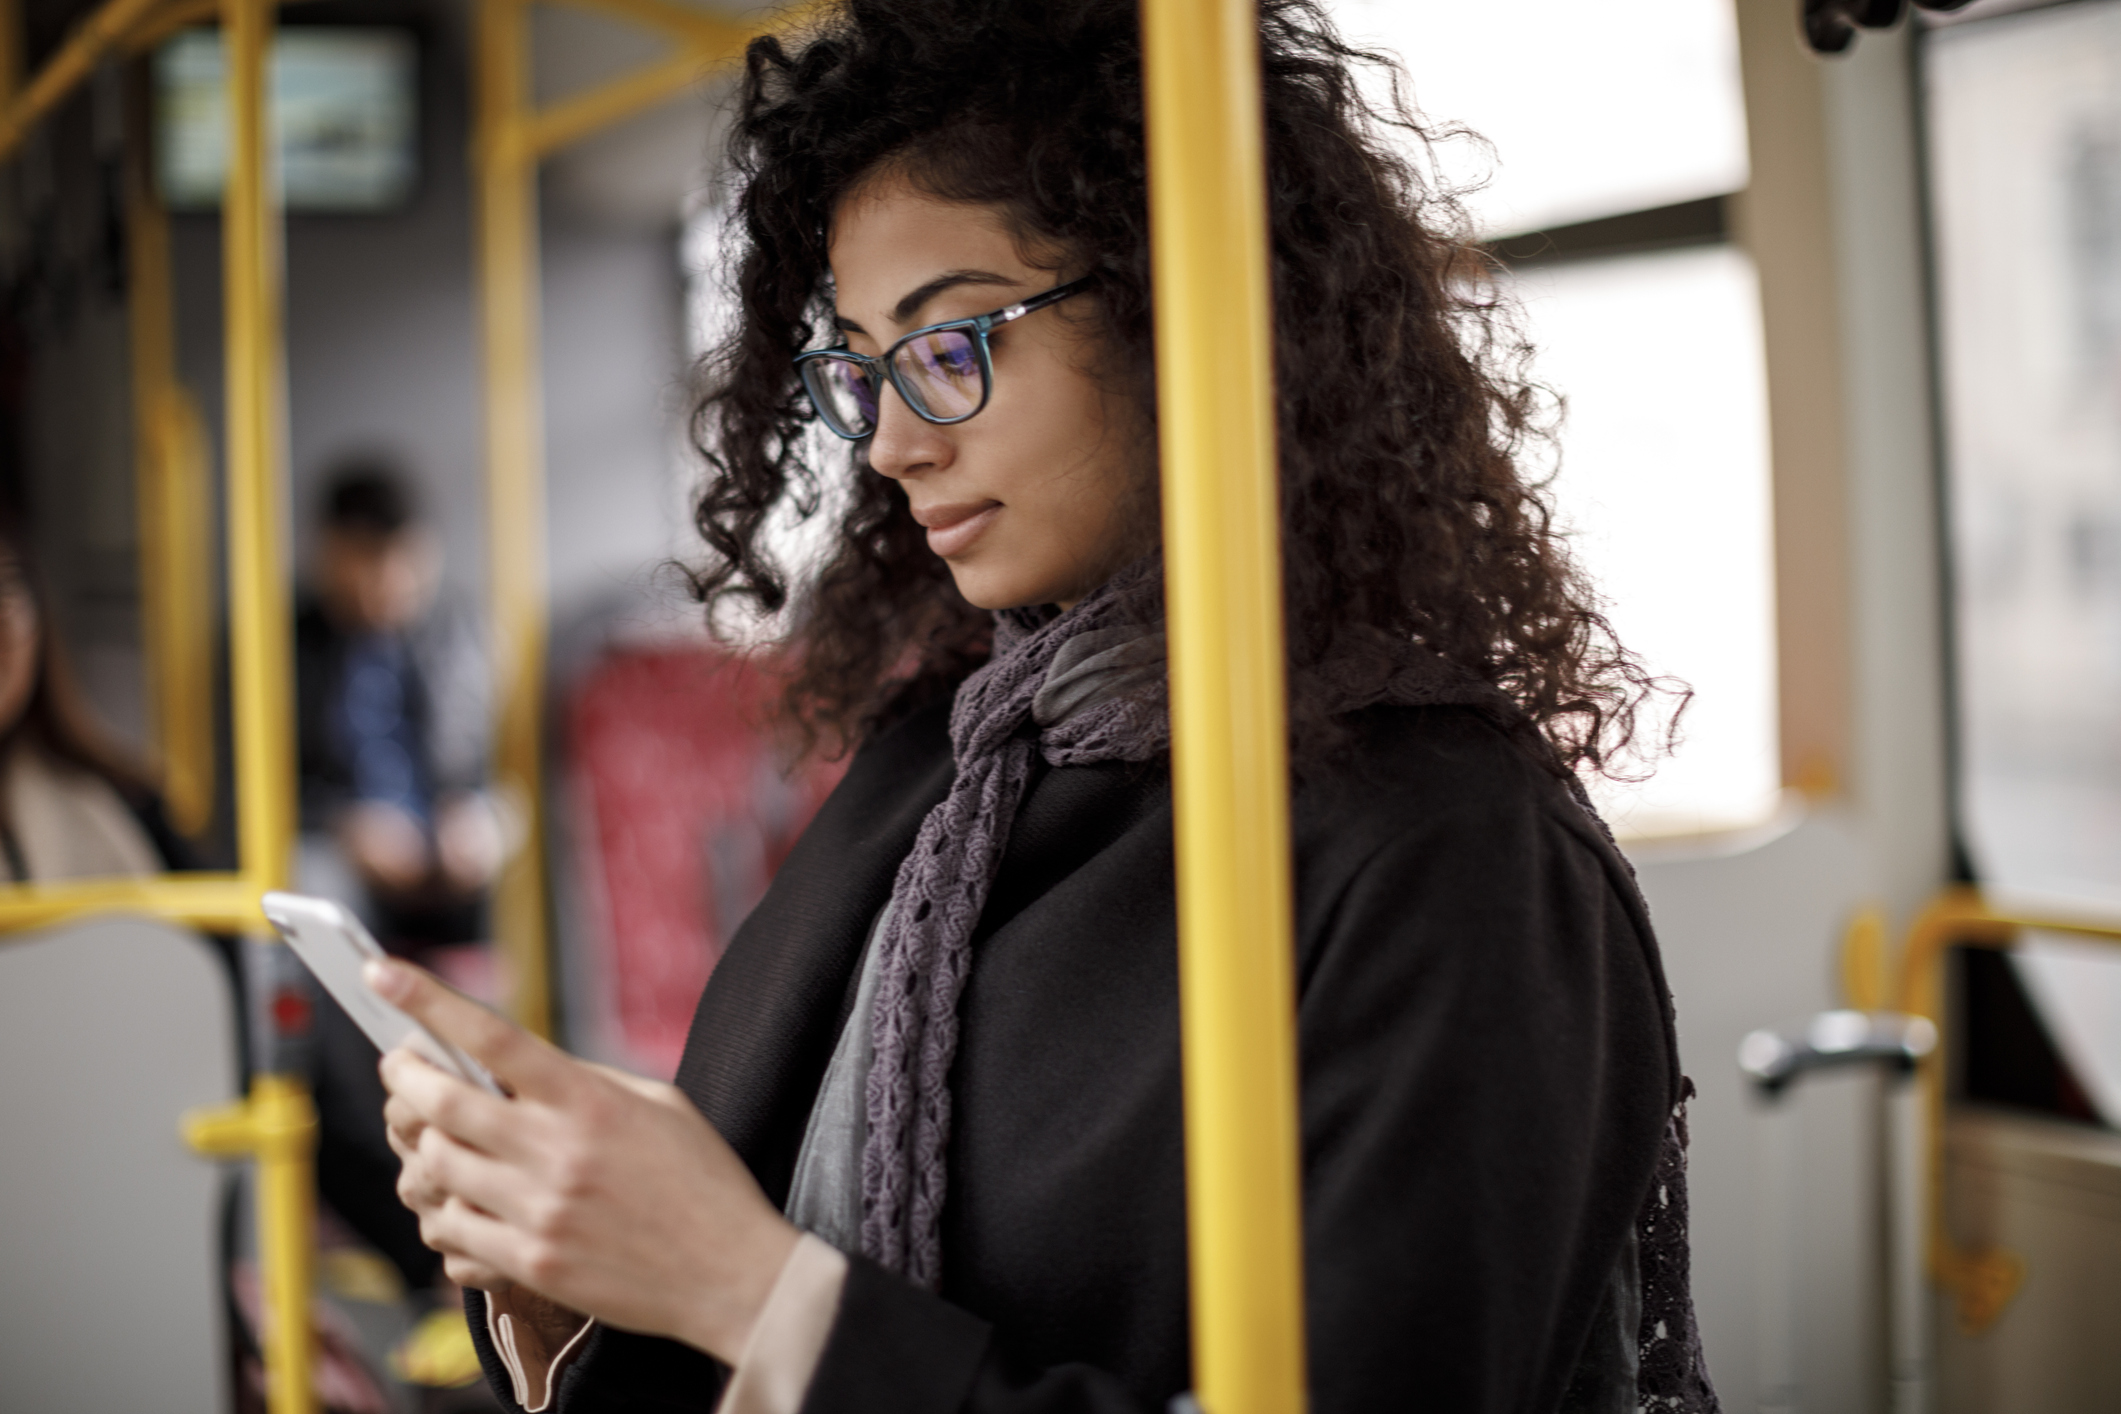 Femme dans un bus qui regarde son téléphone.